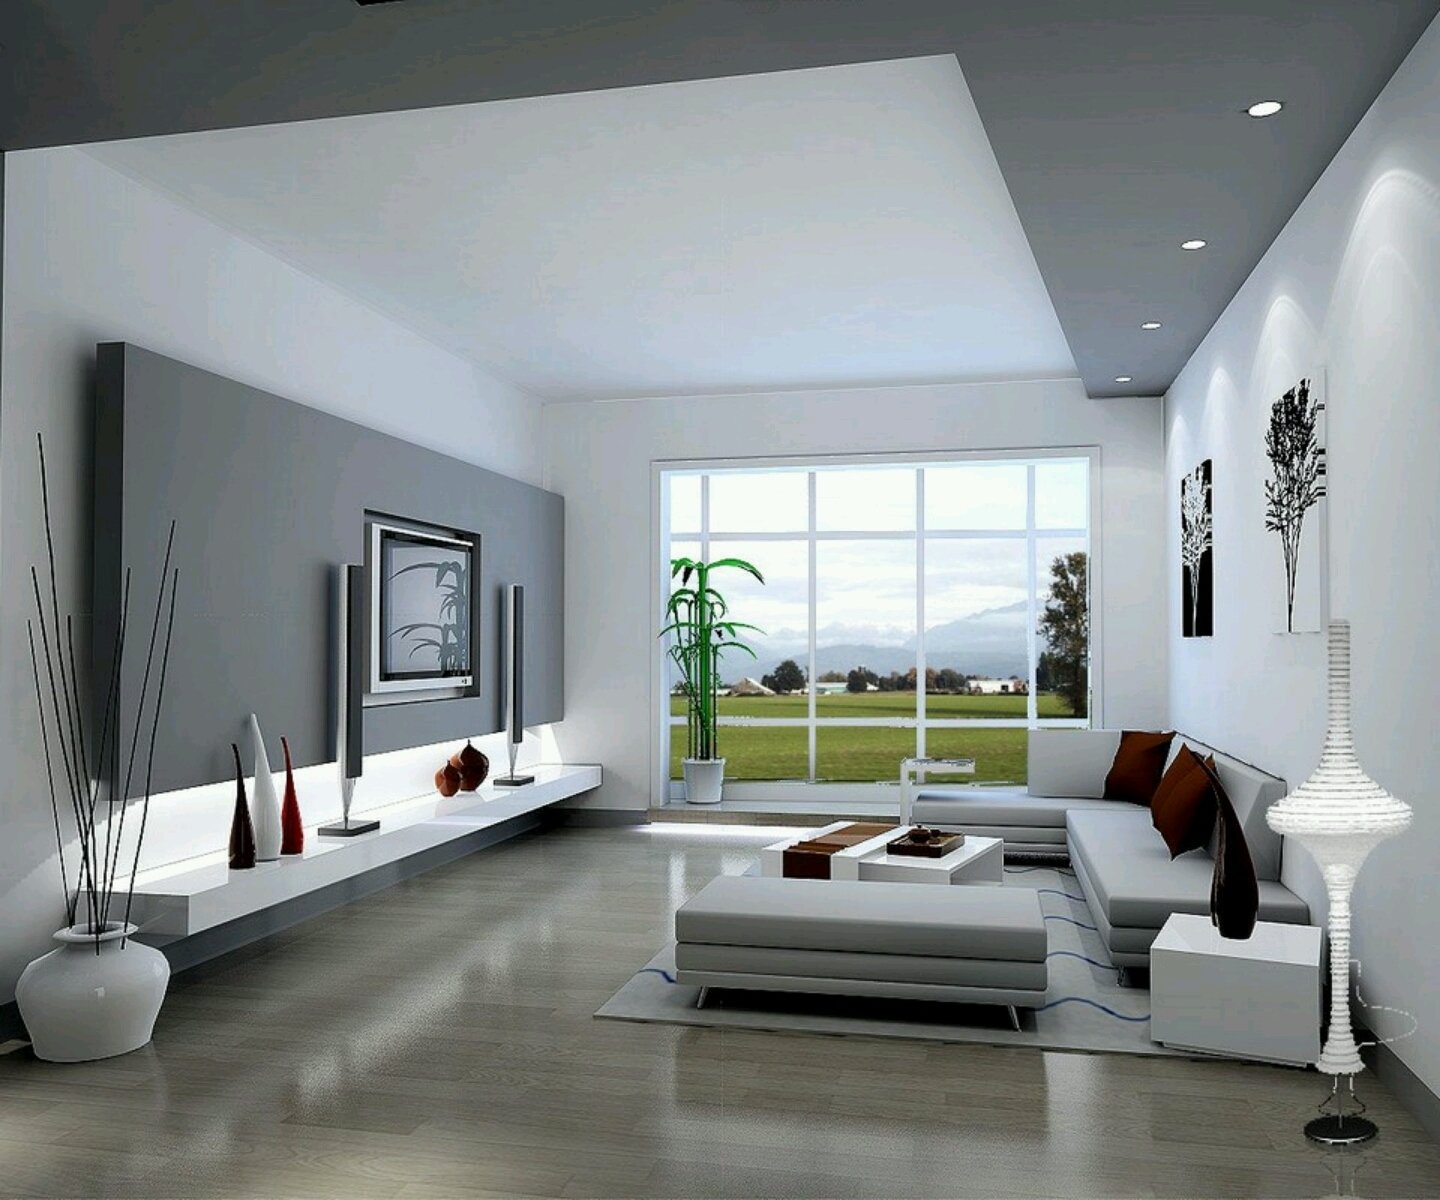 10 Elegant Designing Your Living Room Ideas modern living room design theydesign theydesign 2023